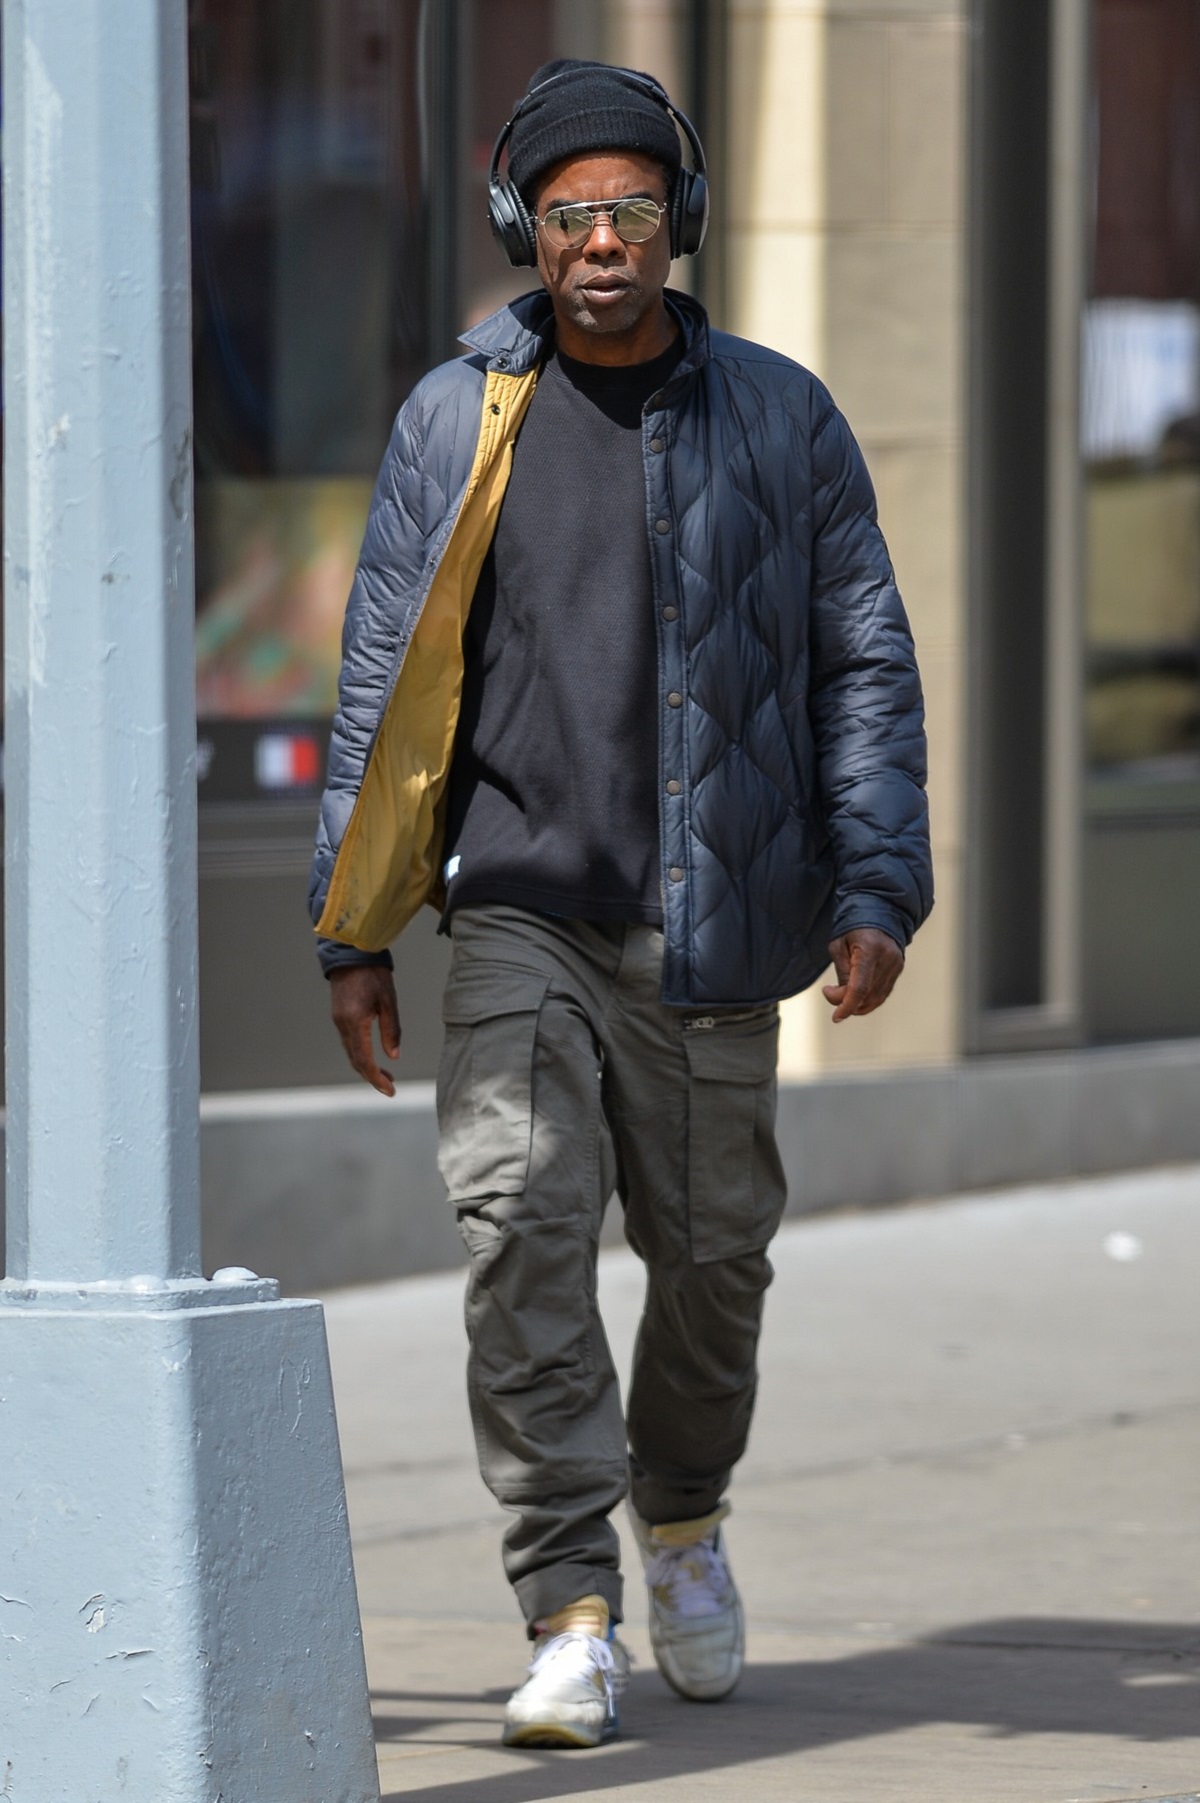 Chris Rock îmbrăcat într-un tricou negru și o jachetă albastră în timp ce se plimbă pe străzile din New York